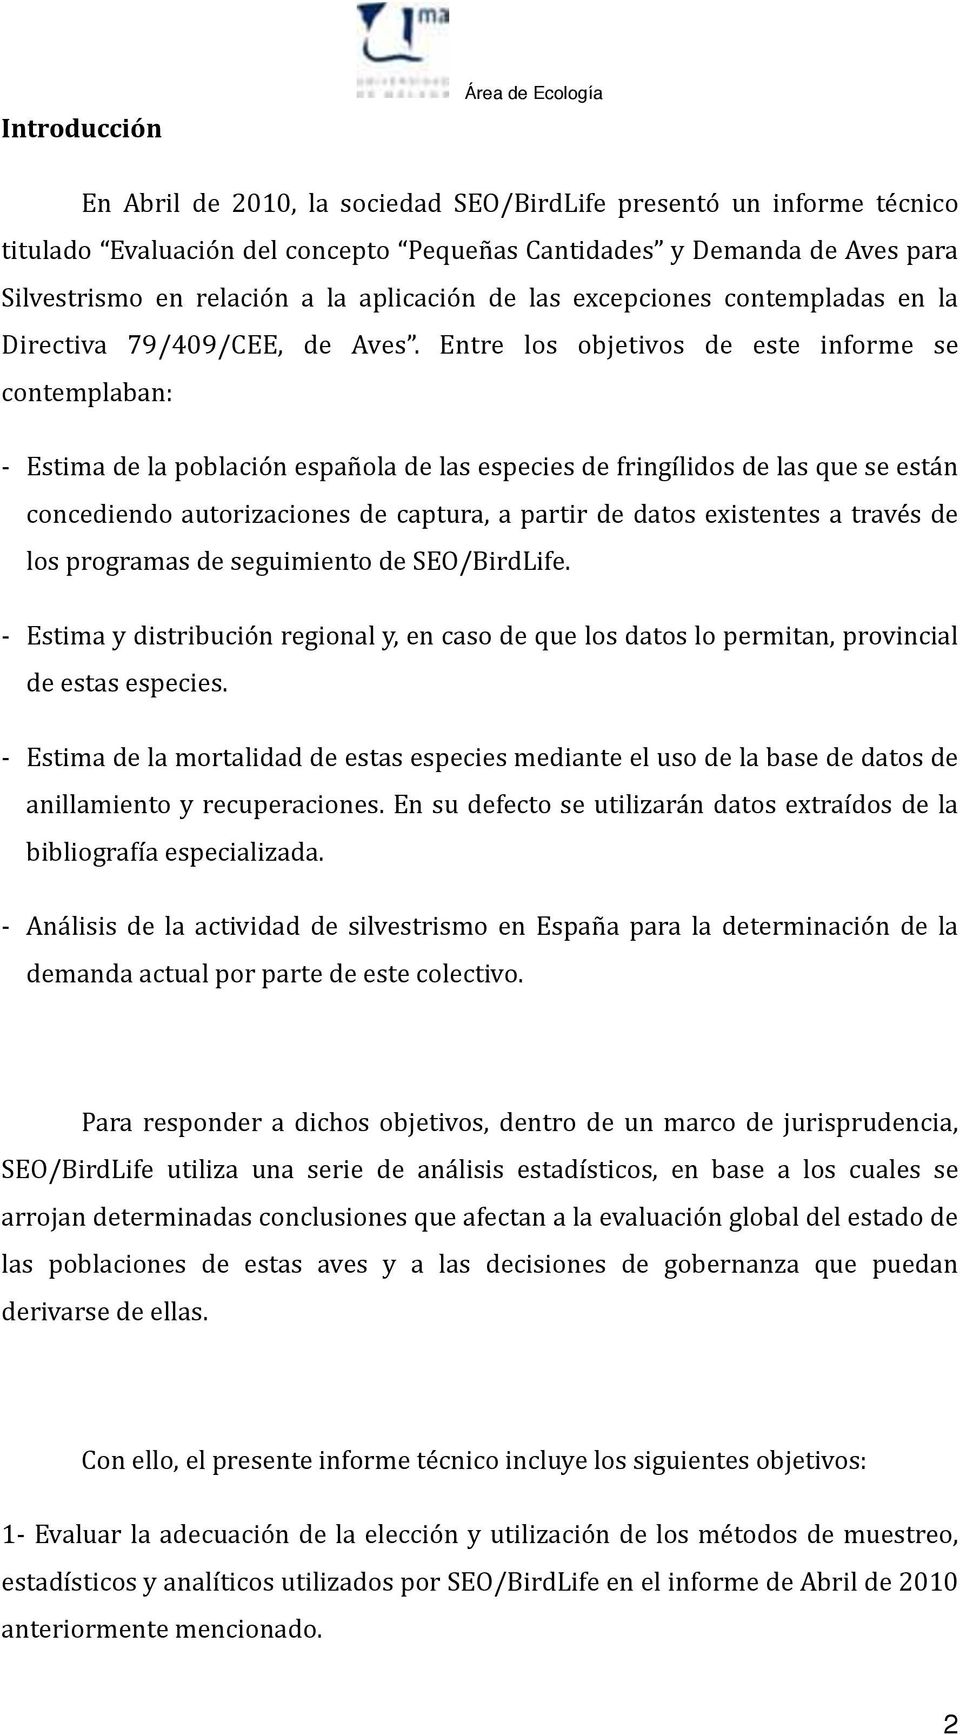 Entre los objetivos de este informe se contemplaban: - Estima de la población española de las especies de fringílidos de las que se están concediendo autorizaciones de captura, a partir de datos